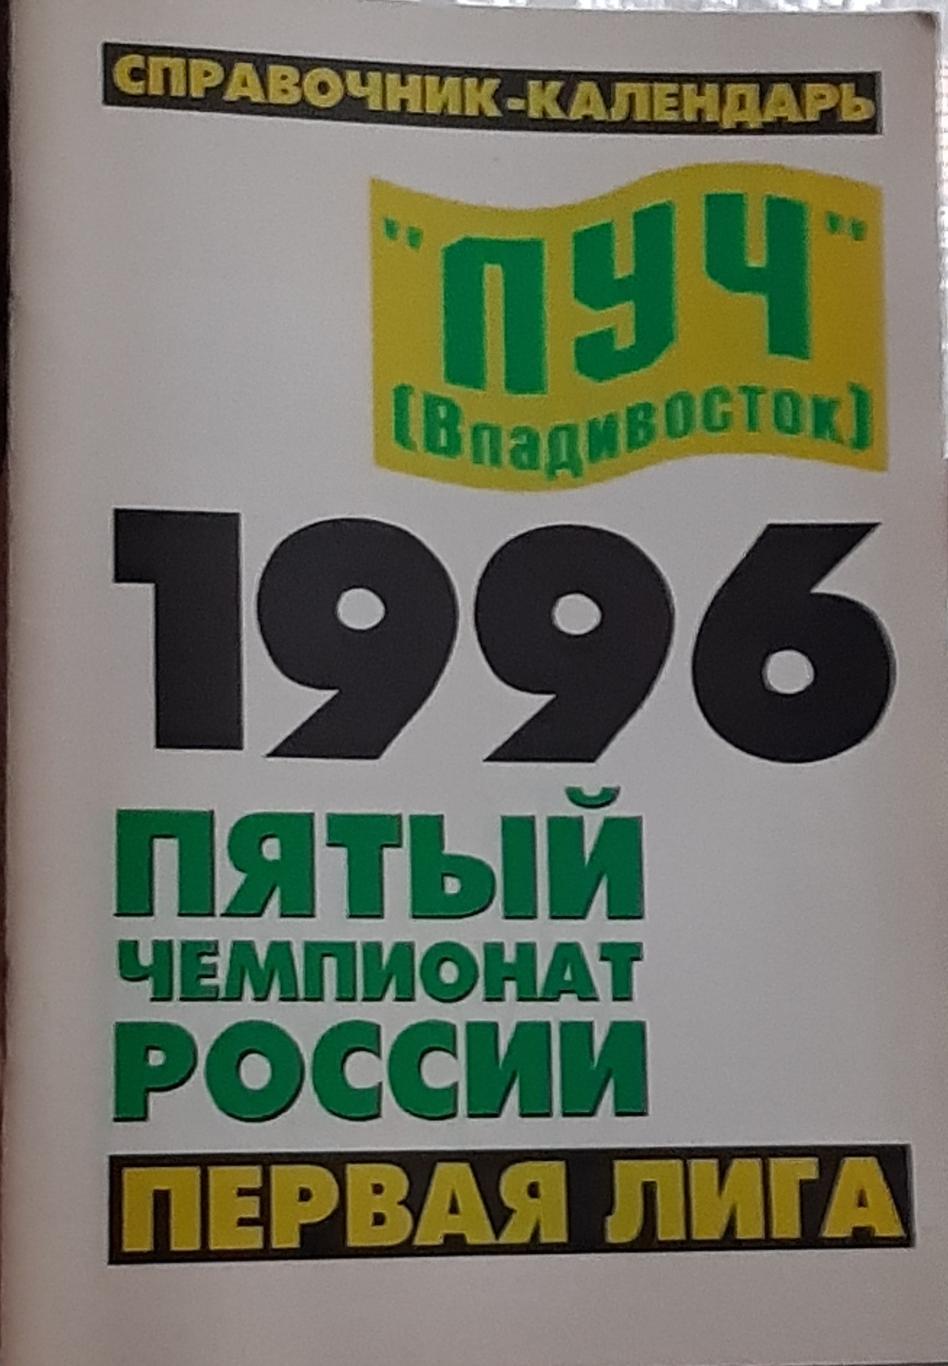 Луч Владивосток-1996. Календарь-справочник